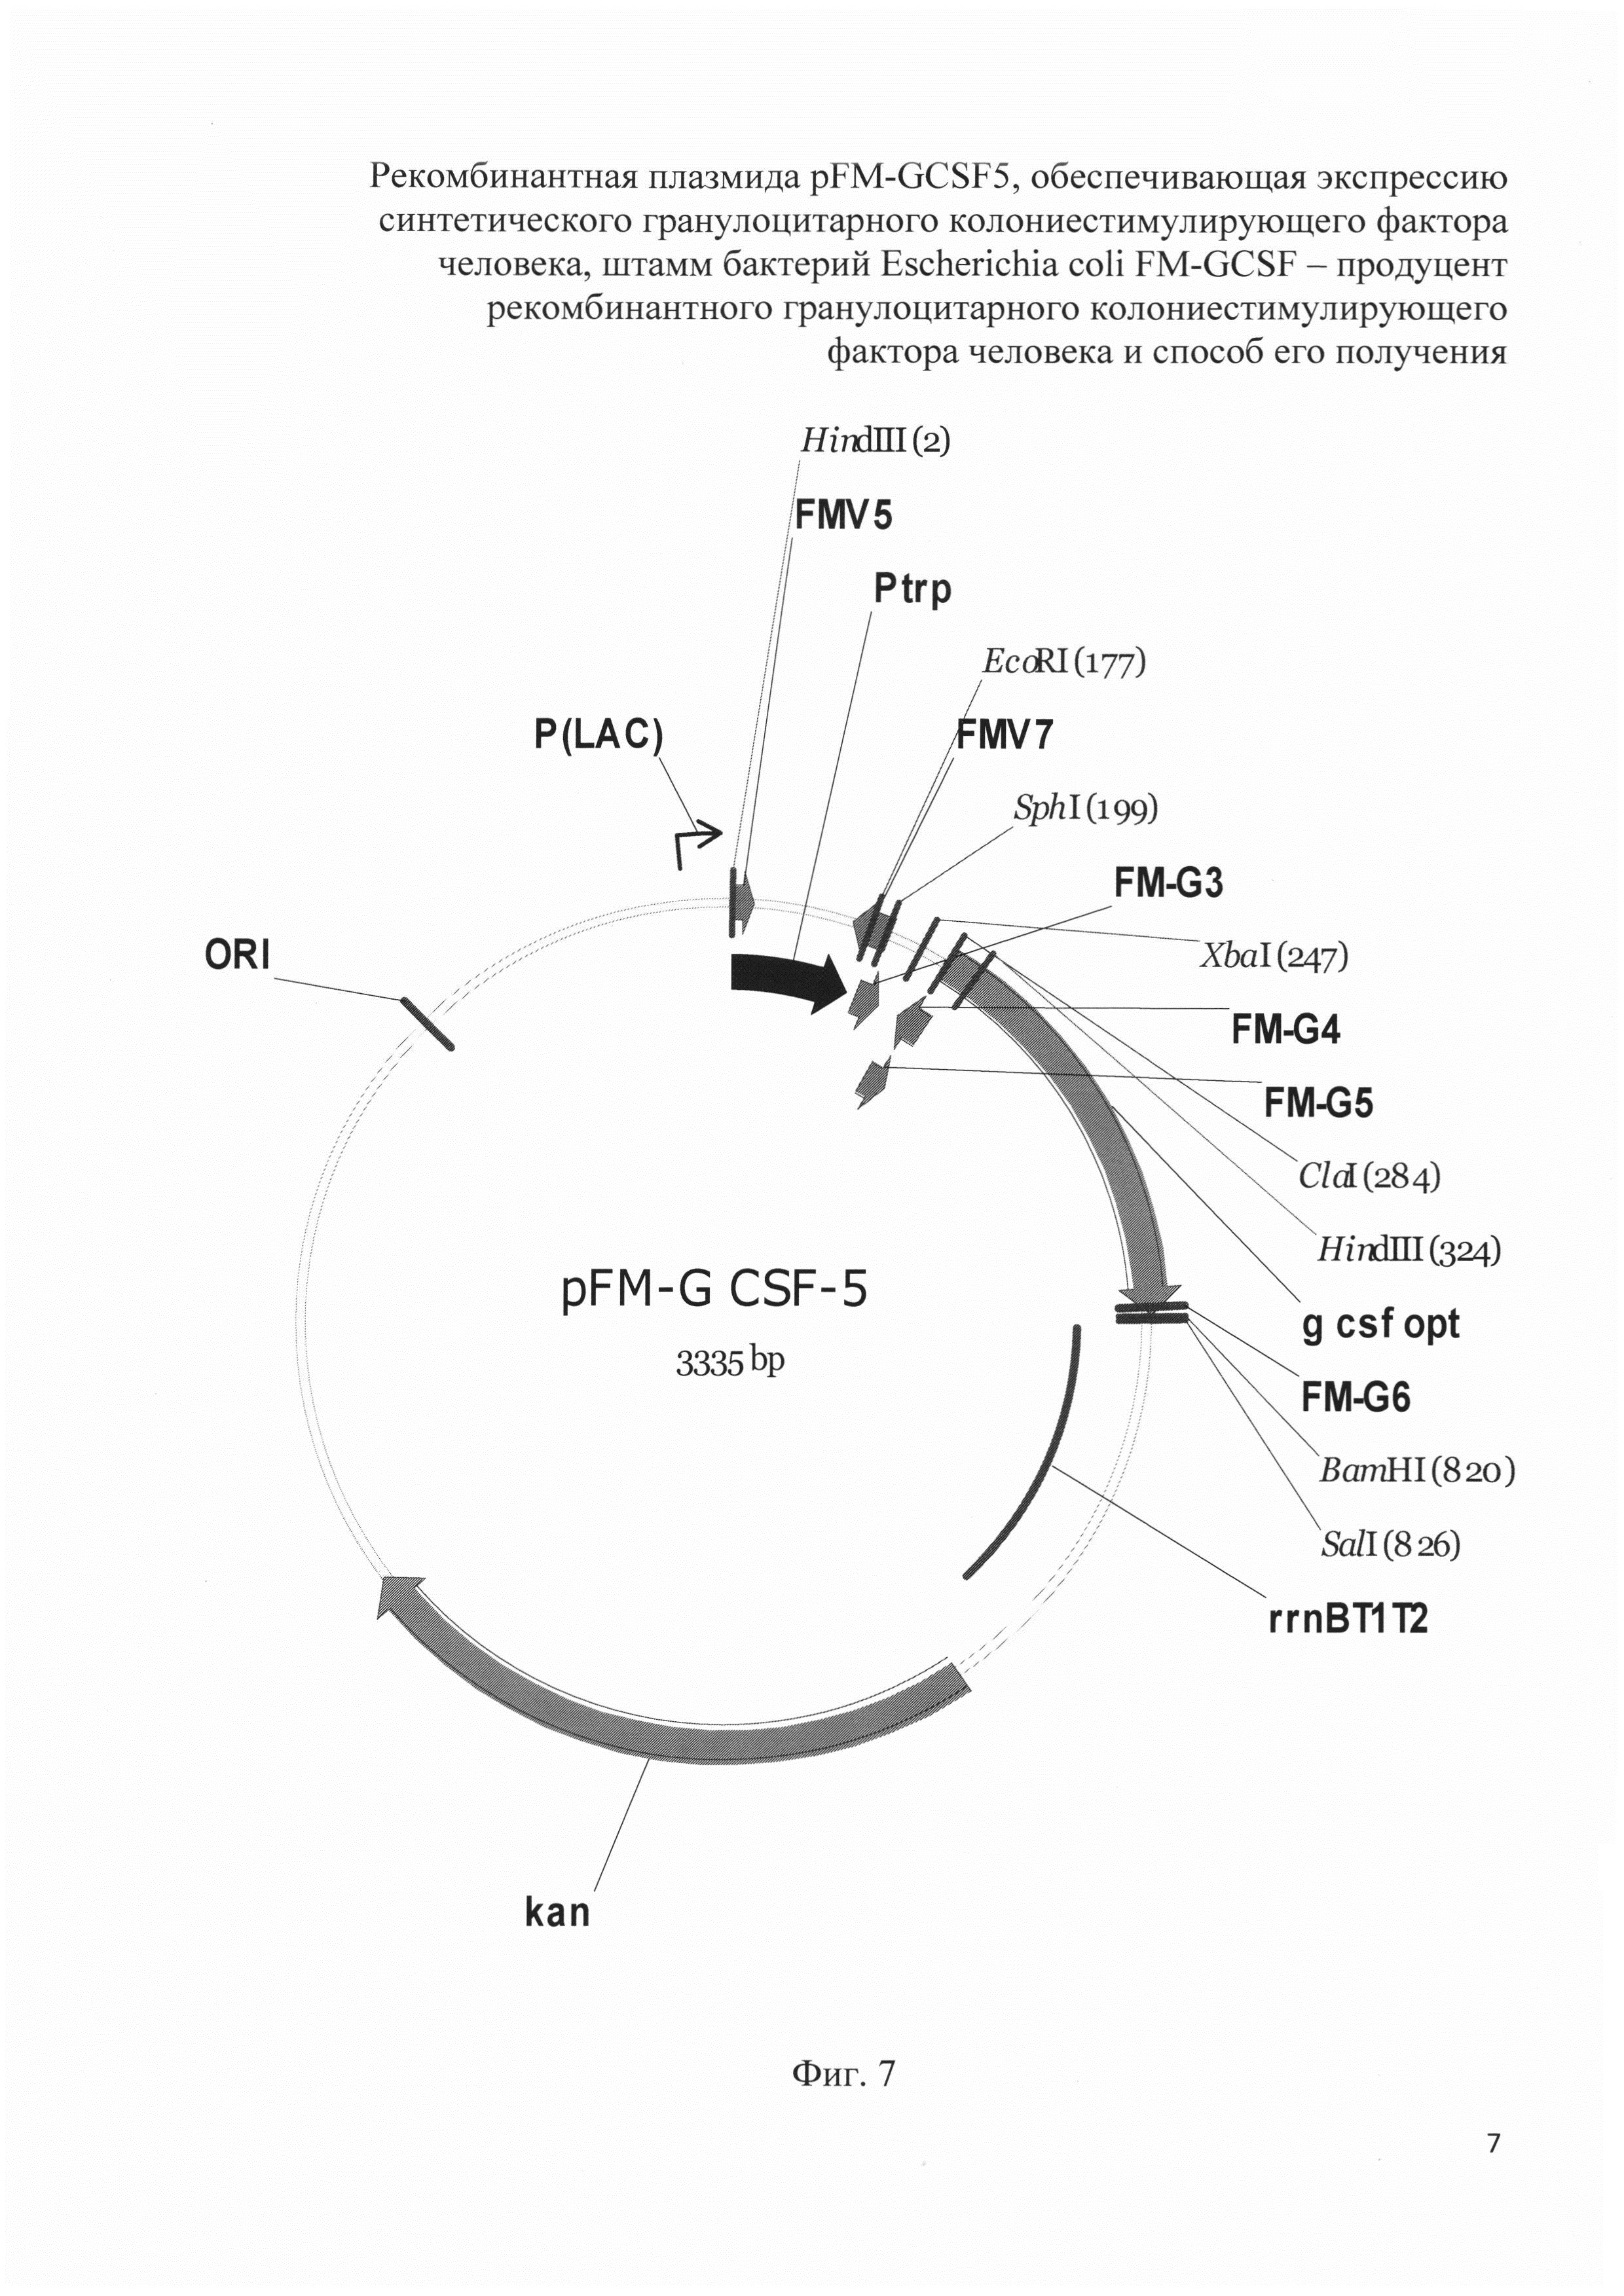 Рекомбинантная плазмида pFM-GCSF5, обеспечивающая экспрессию синтетического гранулоцитарного колониестимулирующего фактора человека, штамм бактерий Escherichia coli FM-GCSF - продуцент рекомбинантного гранулоцитарного колониестимулирующего фактора человека и способ его получения